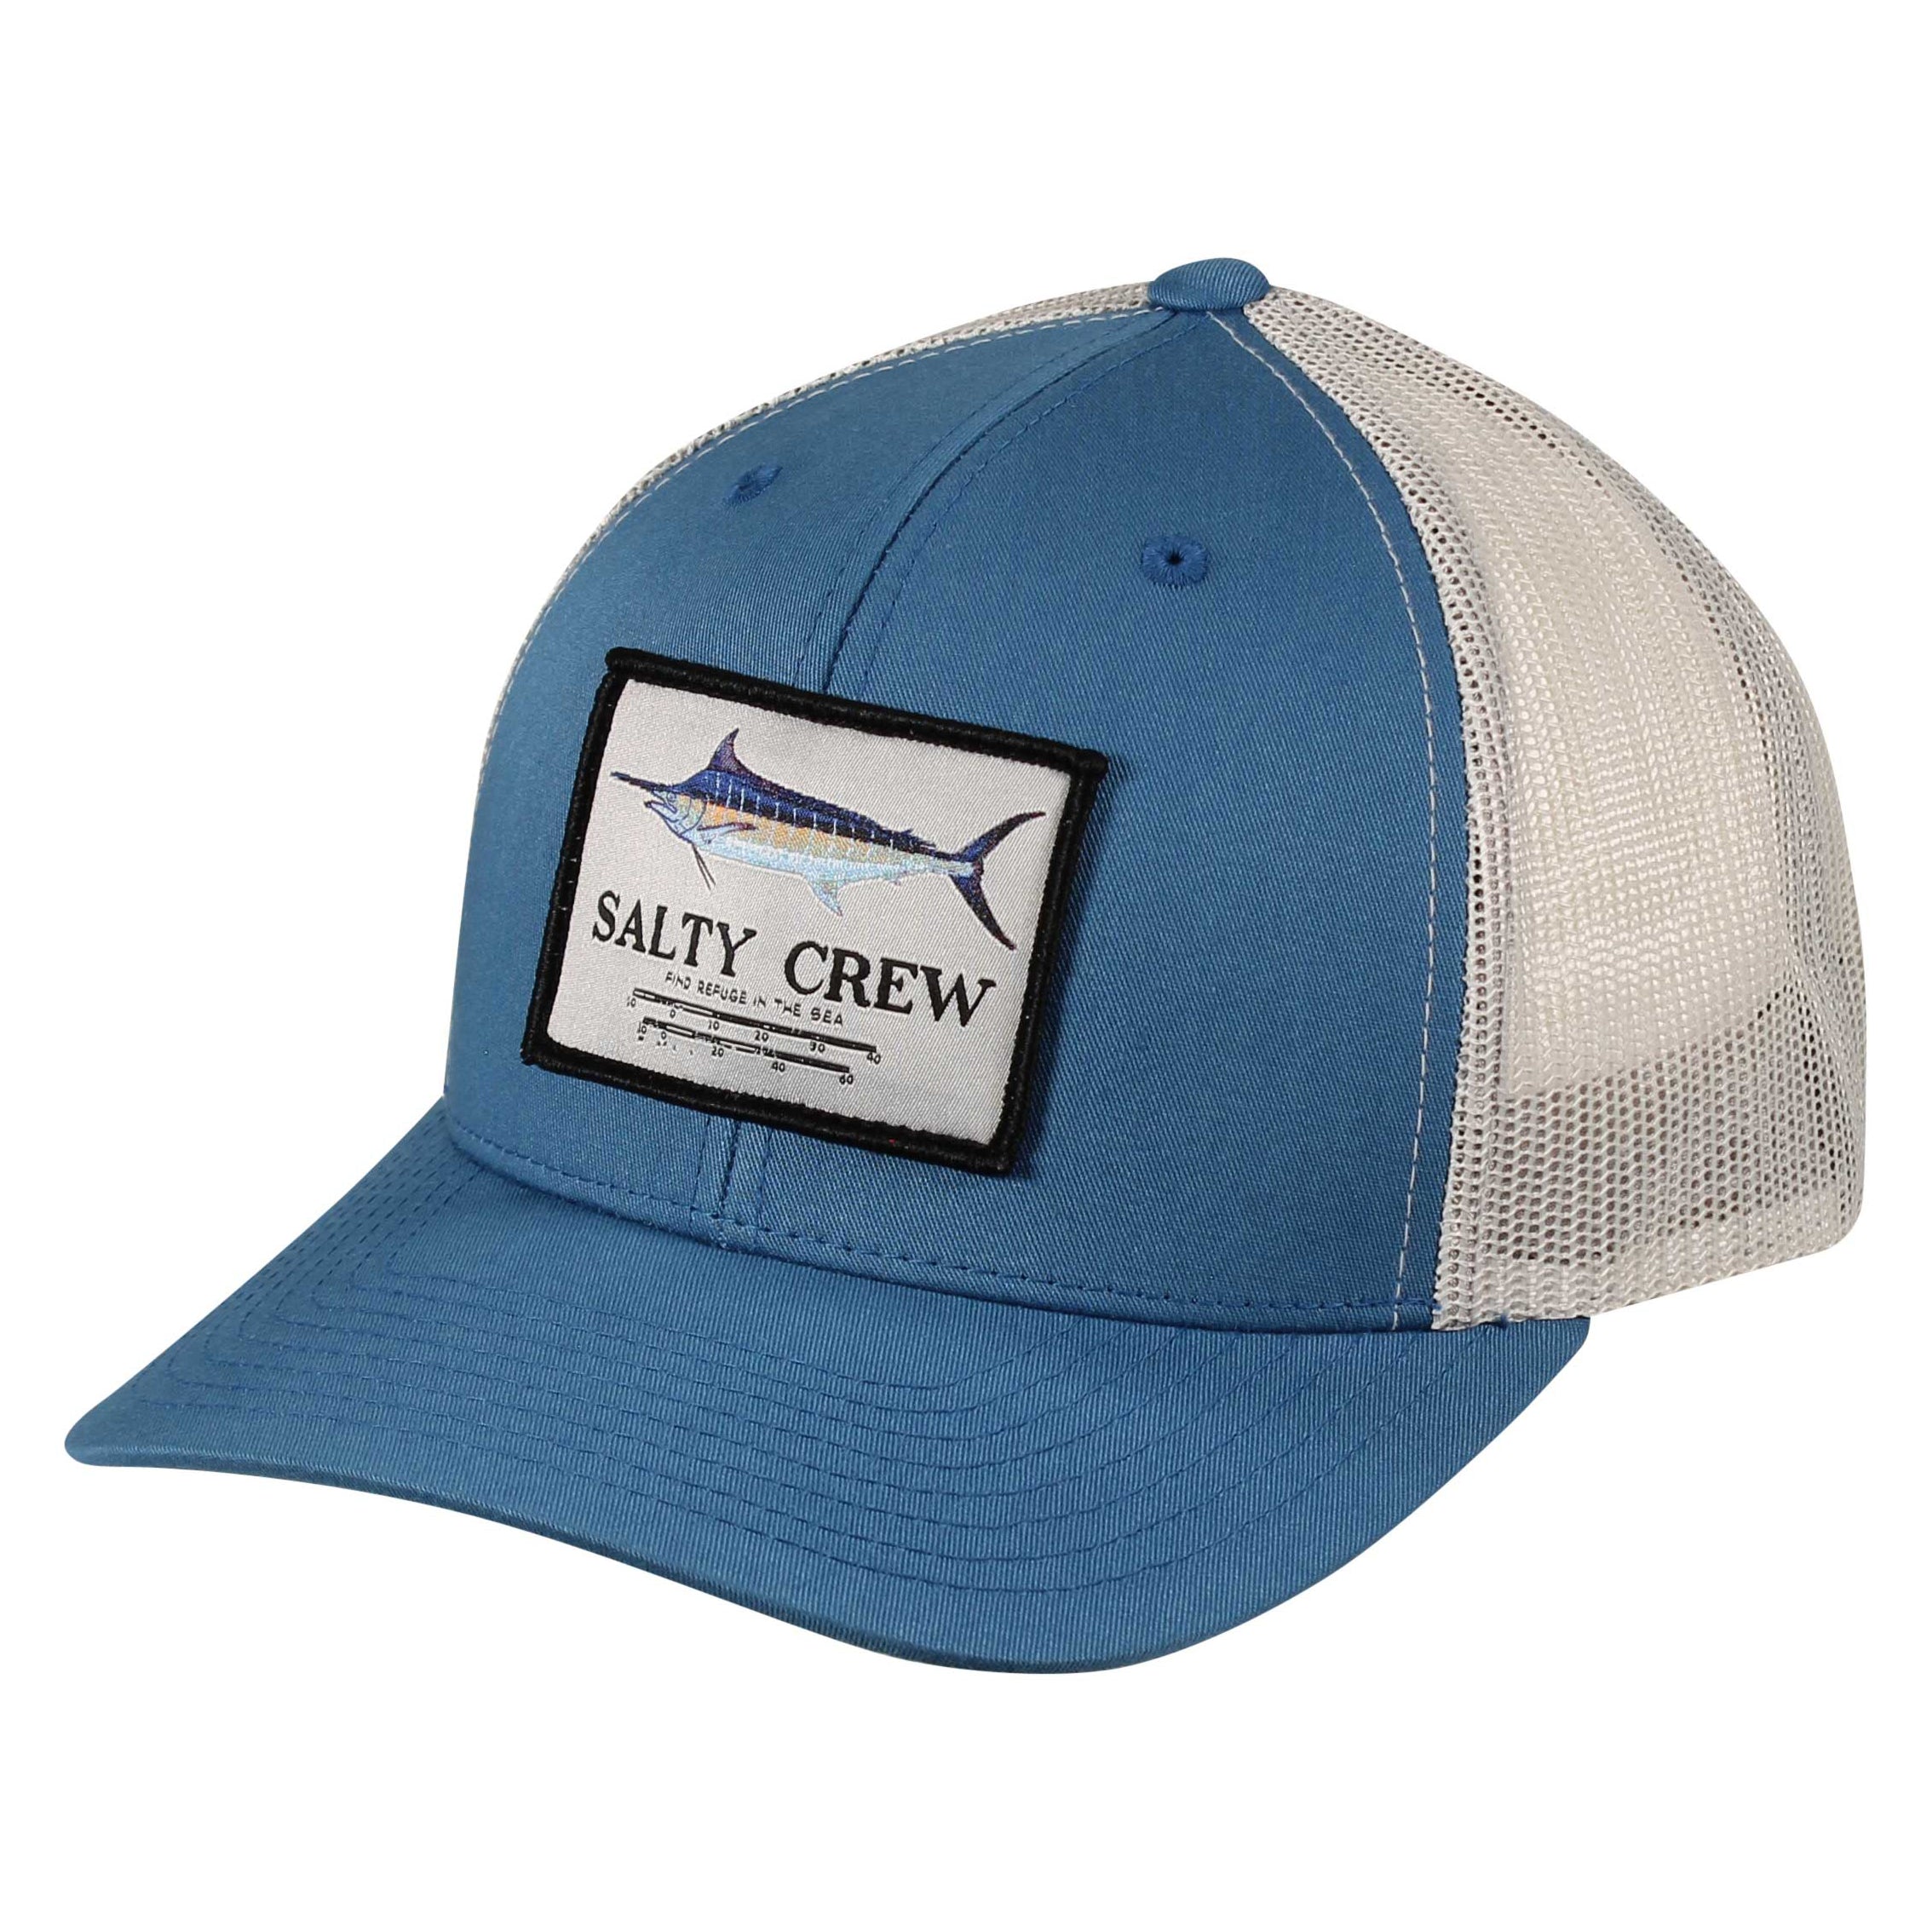 Salty Crew Marlin Mount Trucker Hat Slate/Silver OS